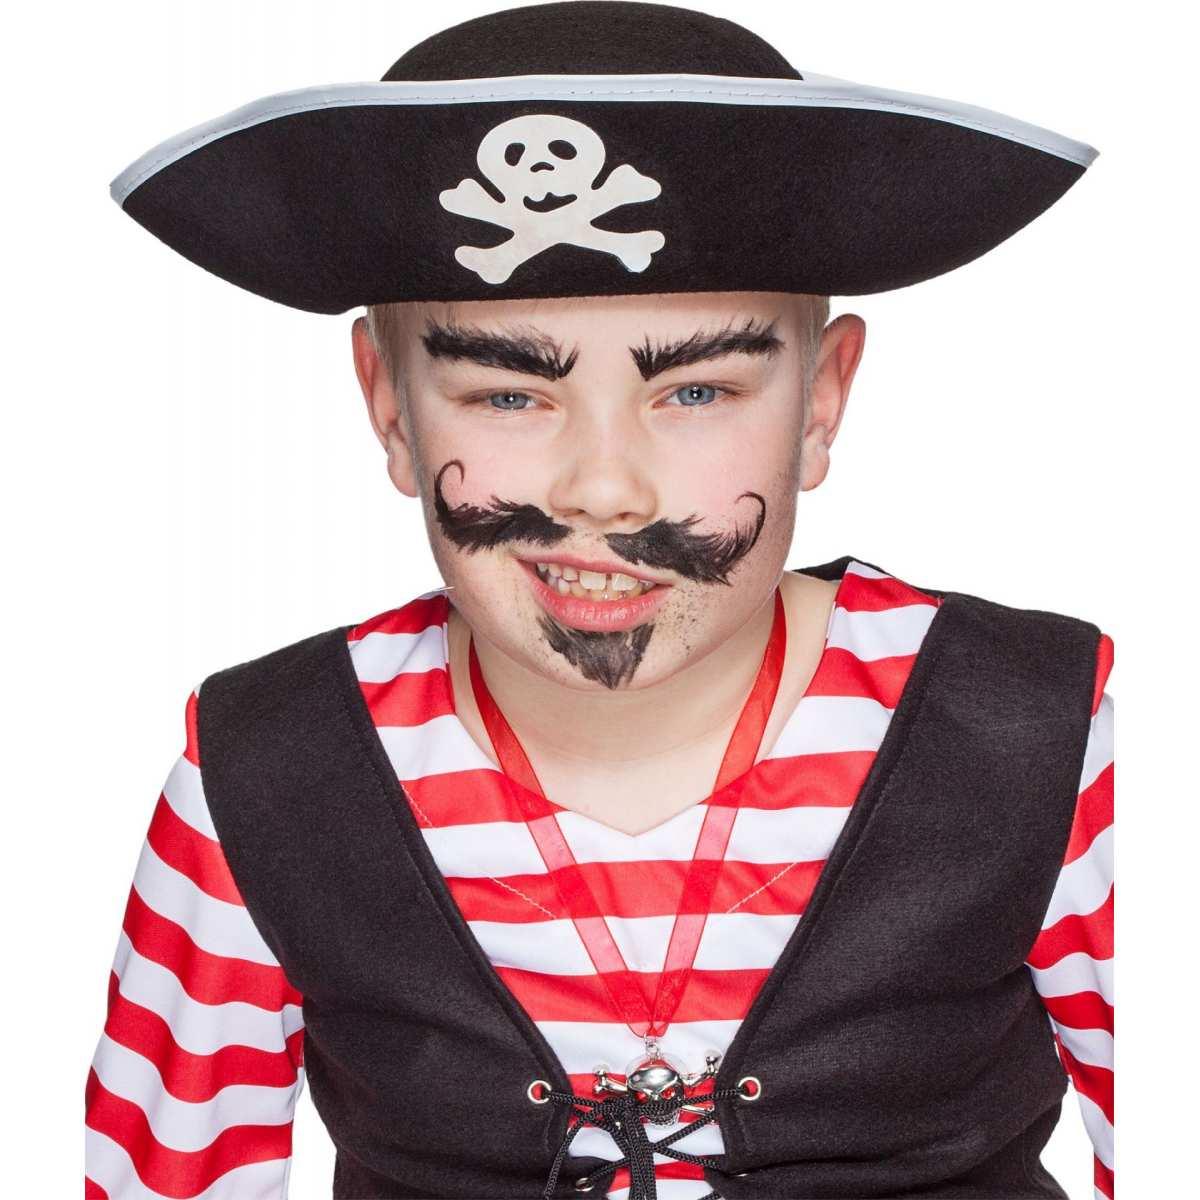 Cappello Pirata per Bambini – The Toys Store